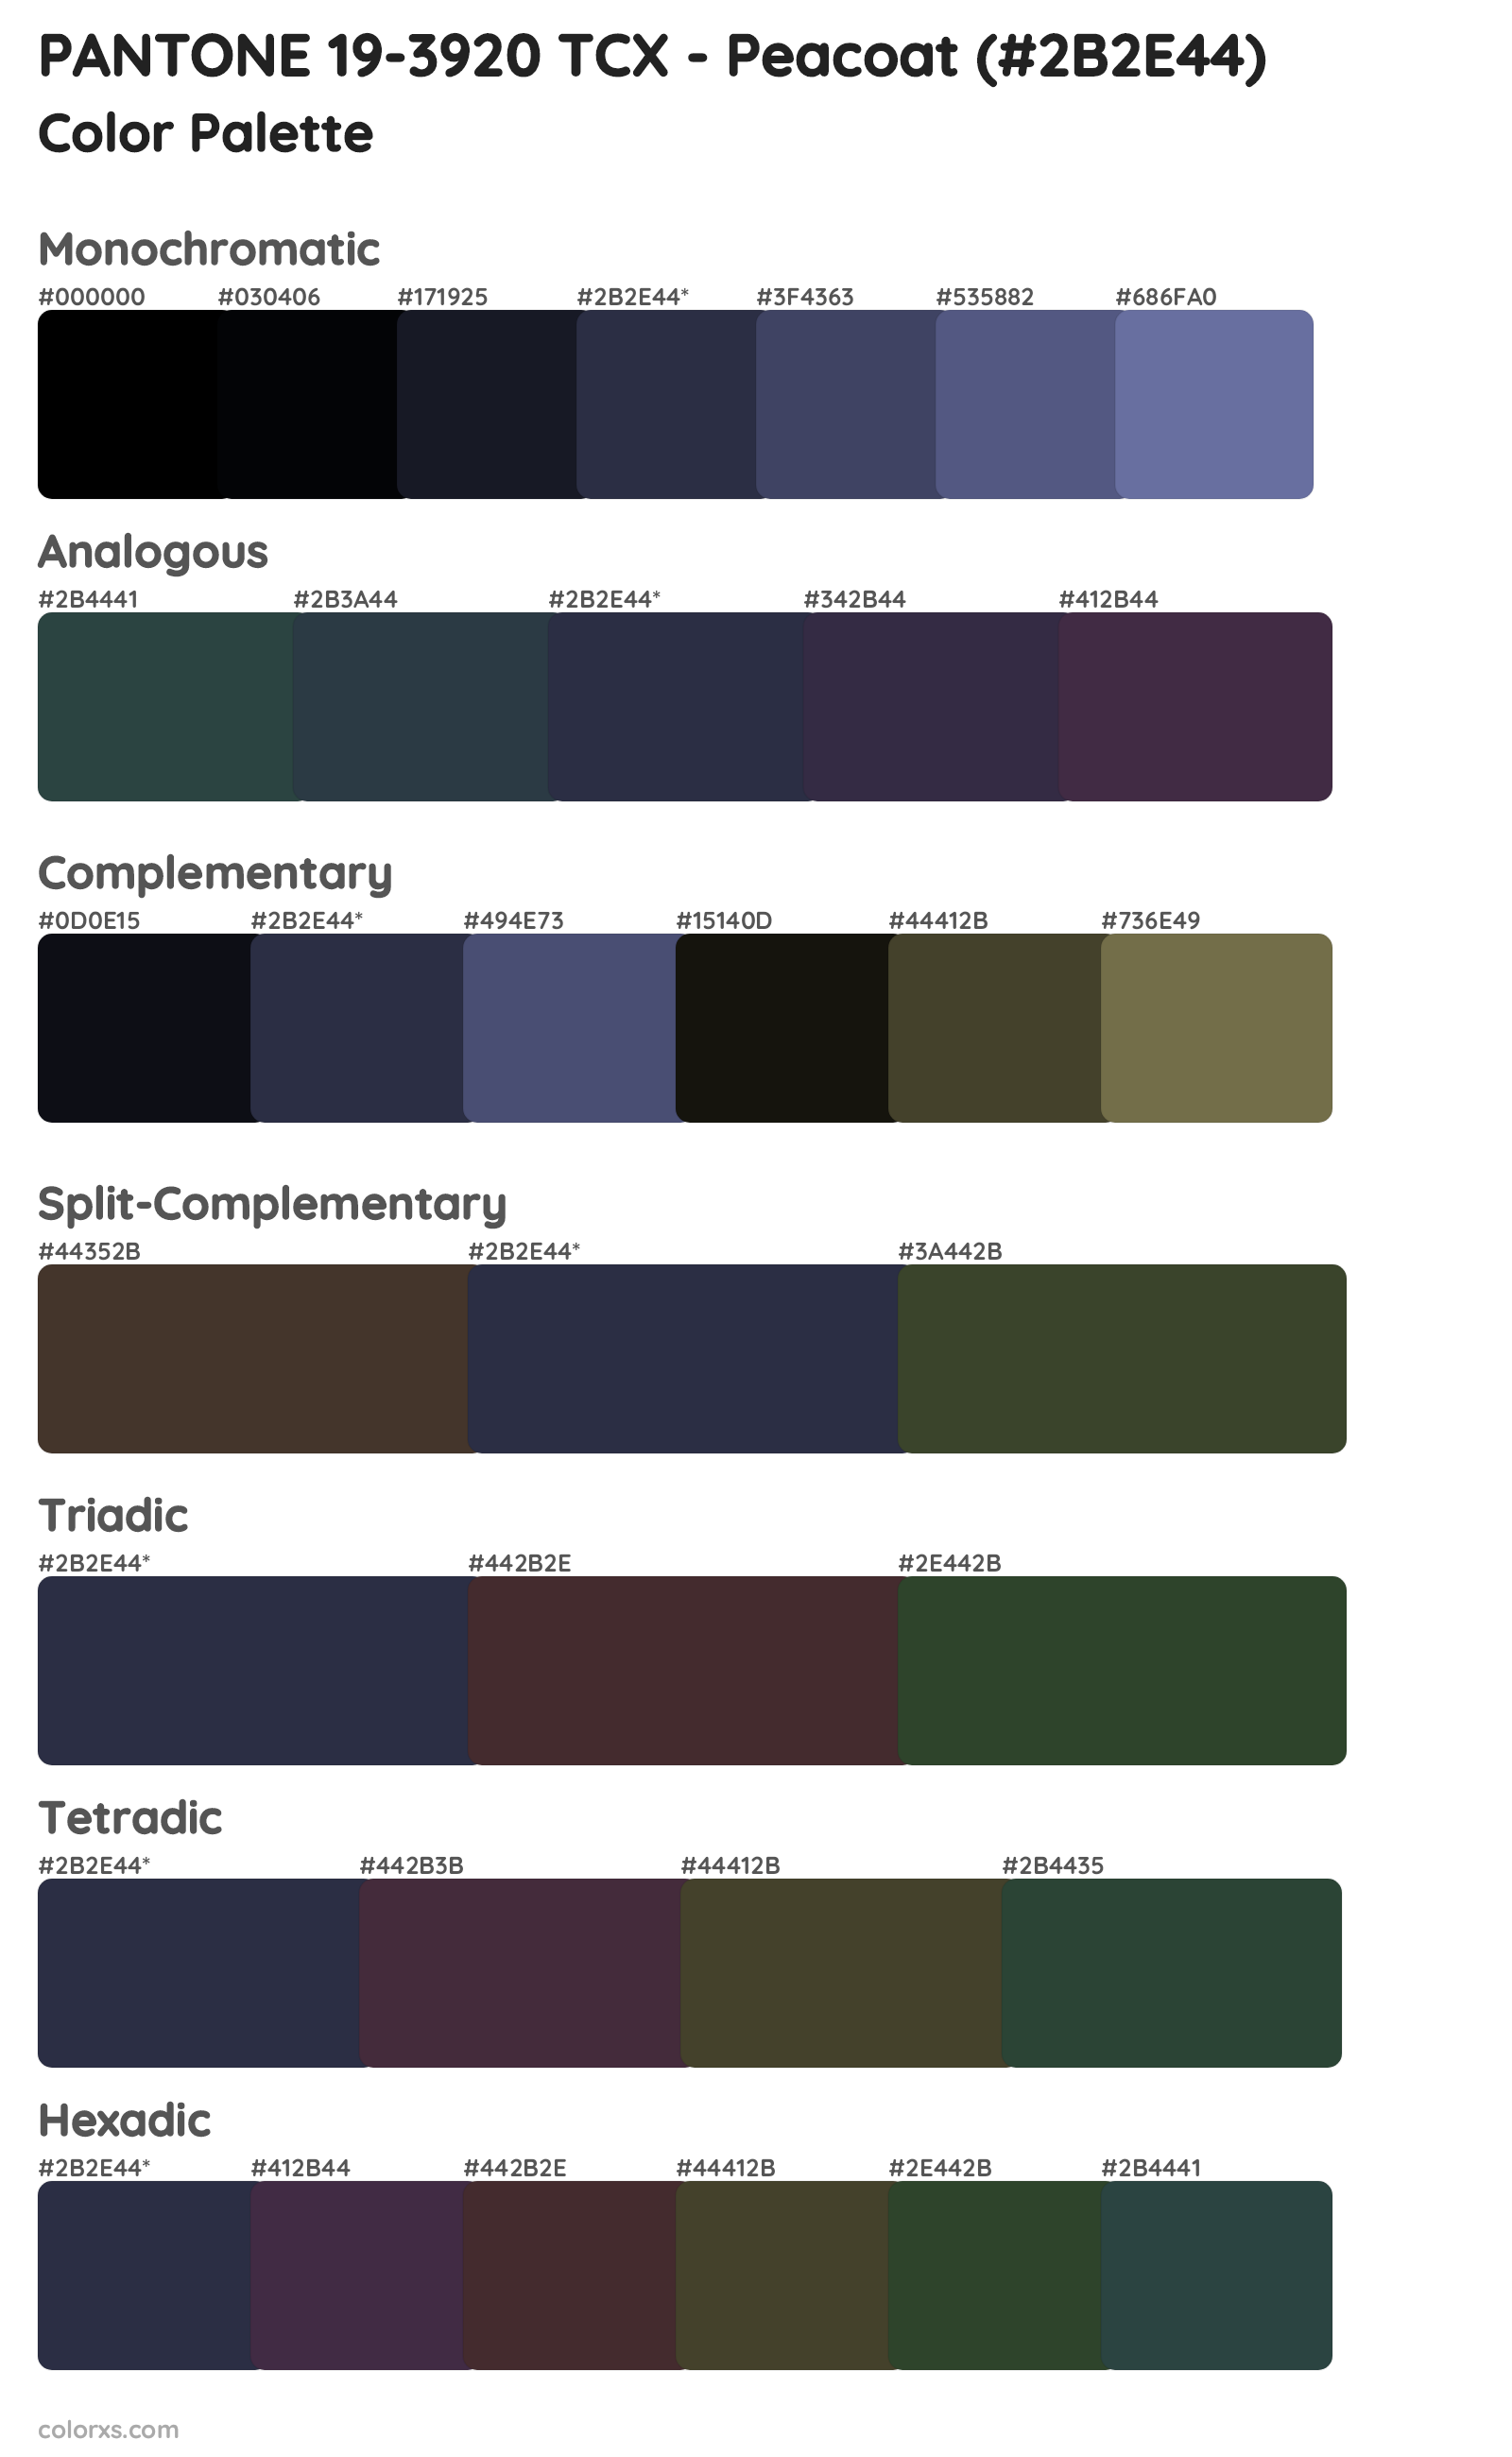 PANTONE 19-3920 TCX - Peacoat Color Scheme Palettes